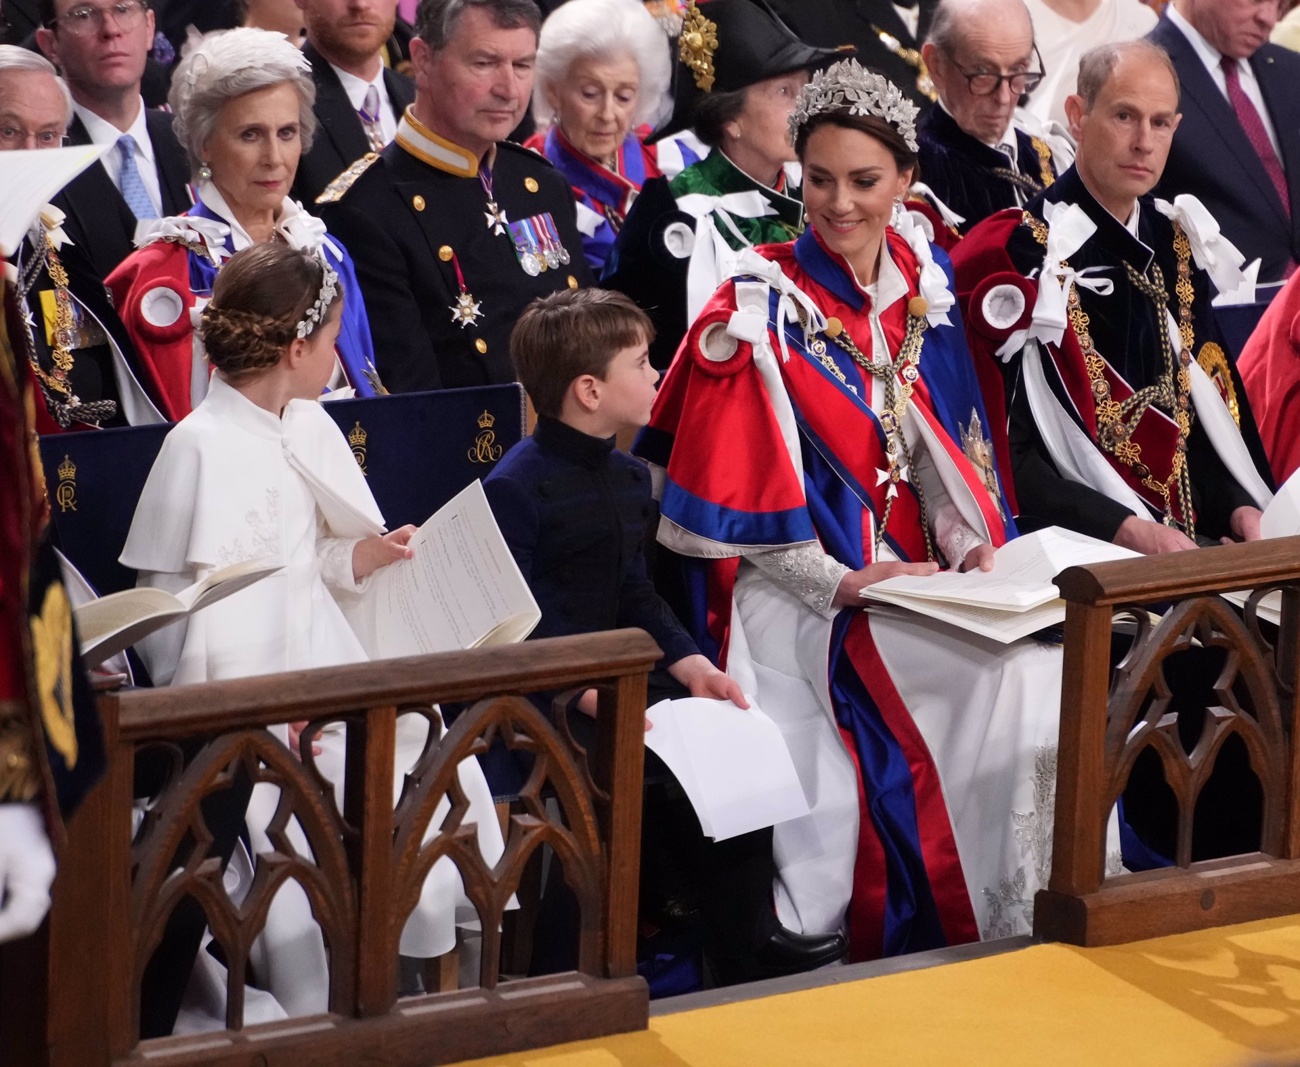 Incoronazione di re Carlo III: un giorno molto speciale per la famiglia reale britannica